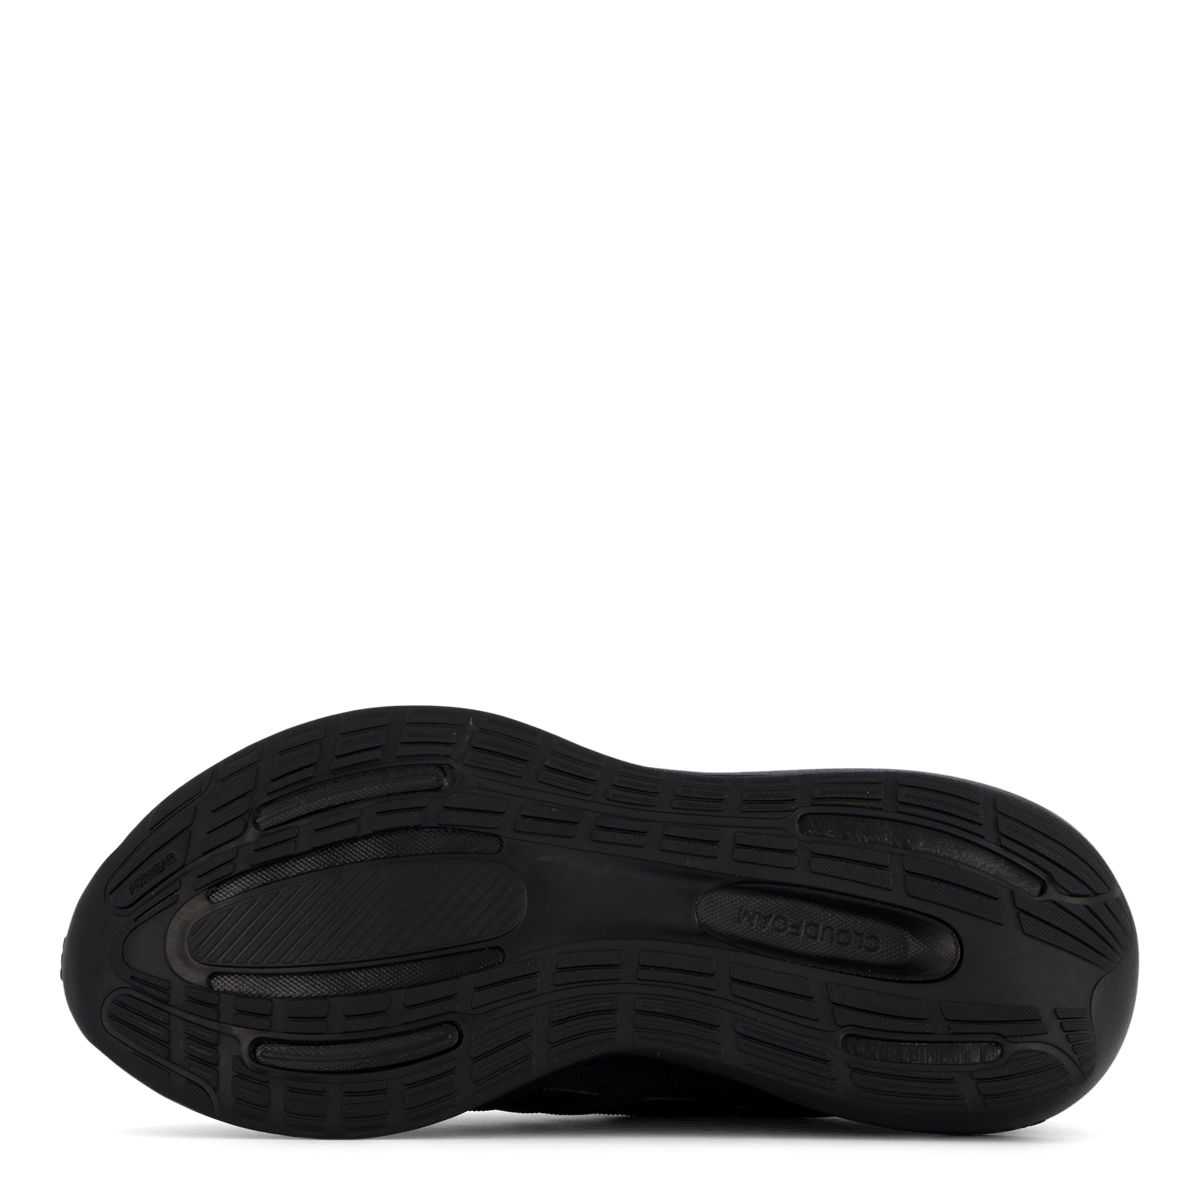 Runfalcon 3.0 Shoes Core Black / Core Black / Carbon